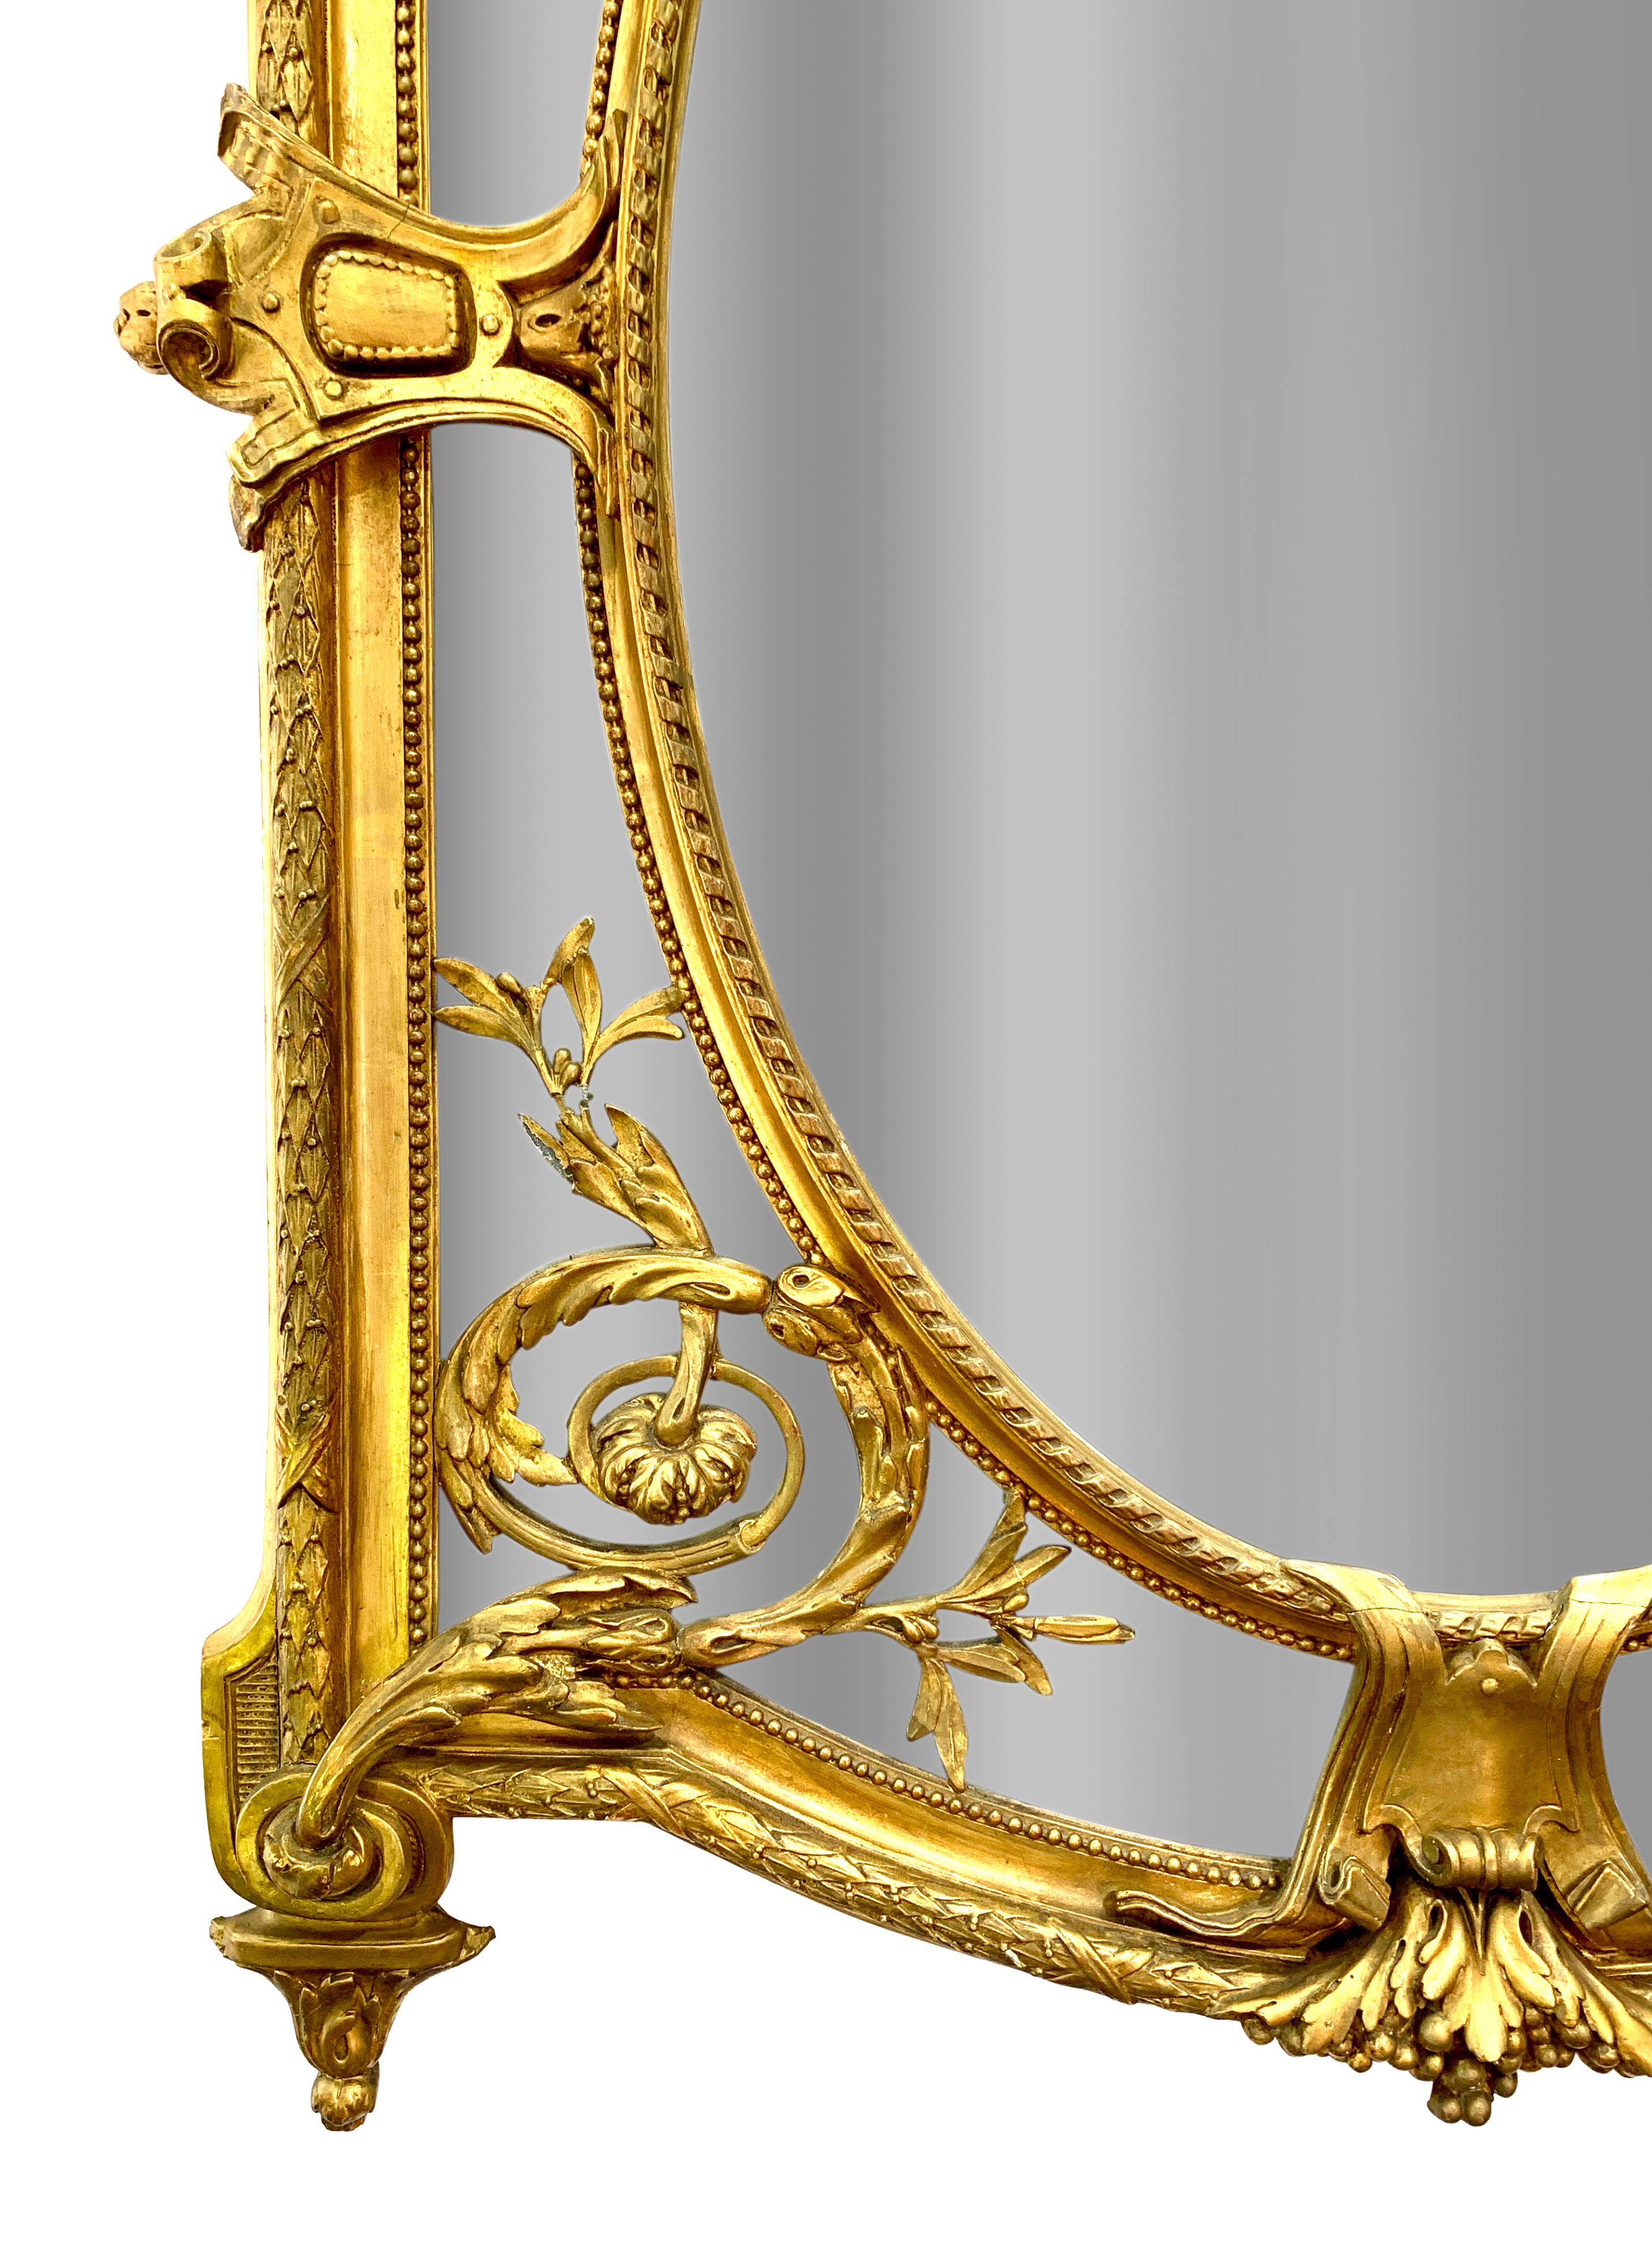 Außergewöhnliche antike Französisch Louis XVI-Stil Vergoldung und Gesso Spiegel. Die gewölbte Platte unter einem kunstvollen Wappen aus Rankenornamenten und Blumen mit zwei schön geschnitzten geflügelten Putten, die eine zentrale ovale Platte mit